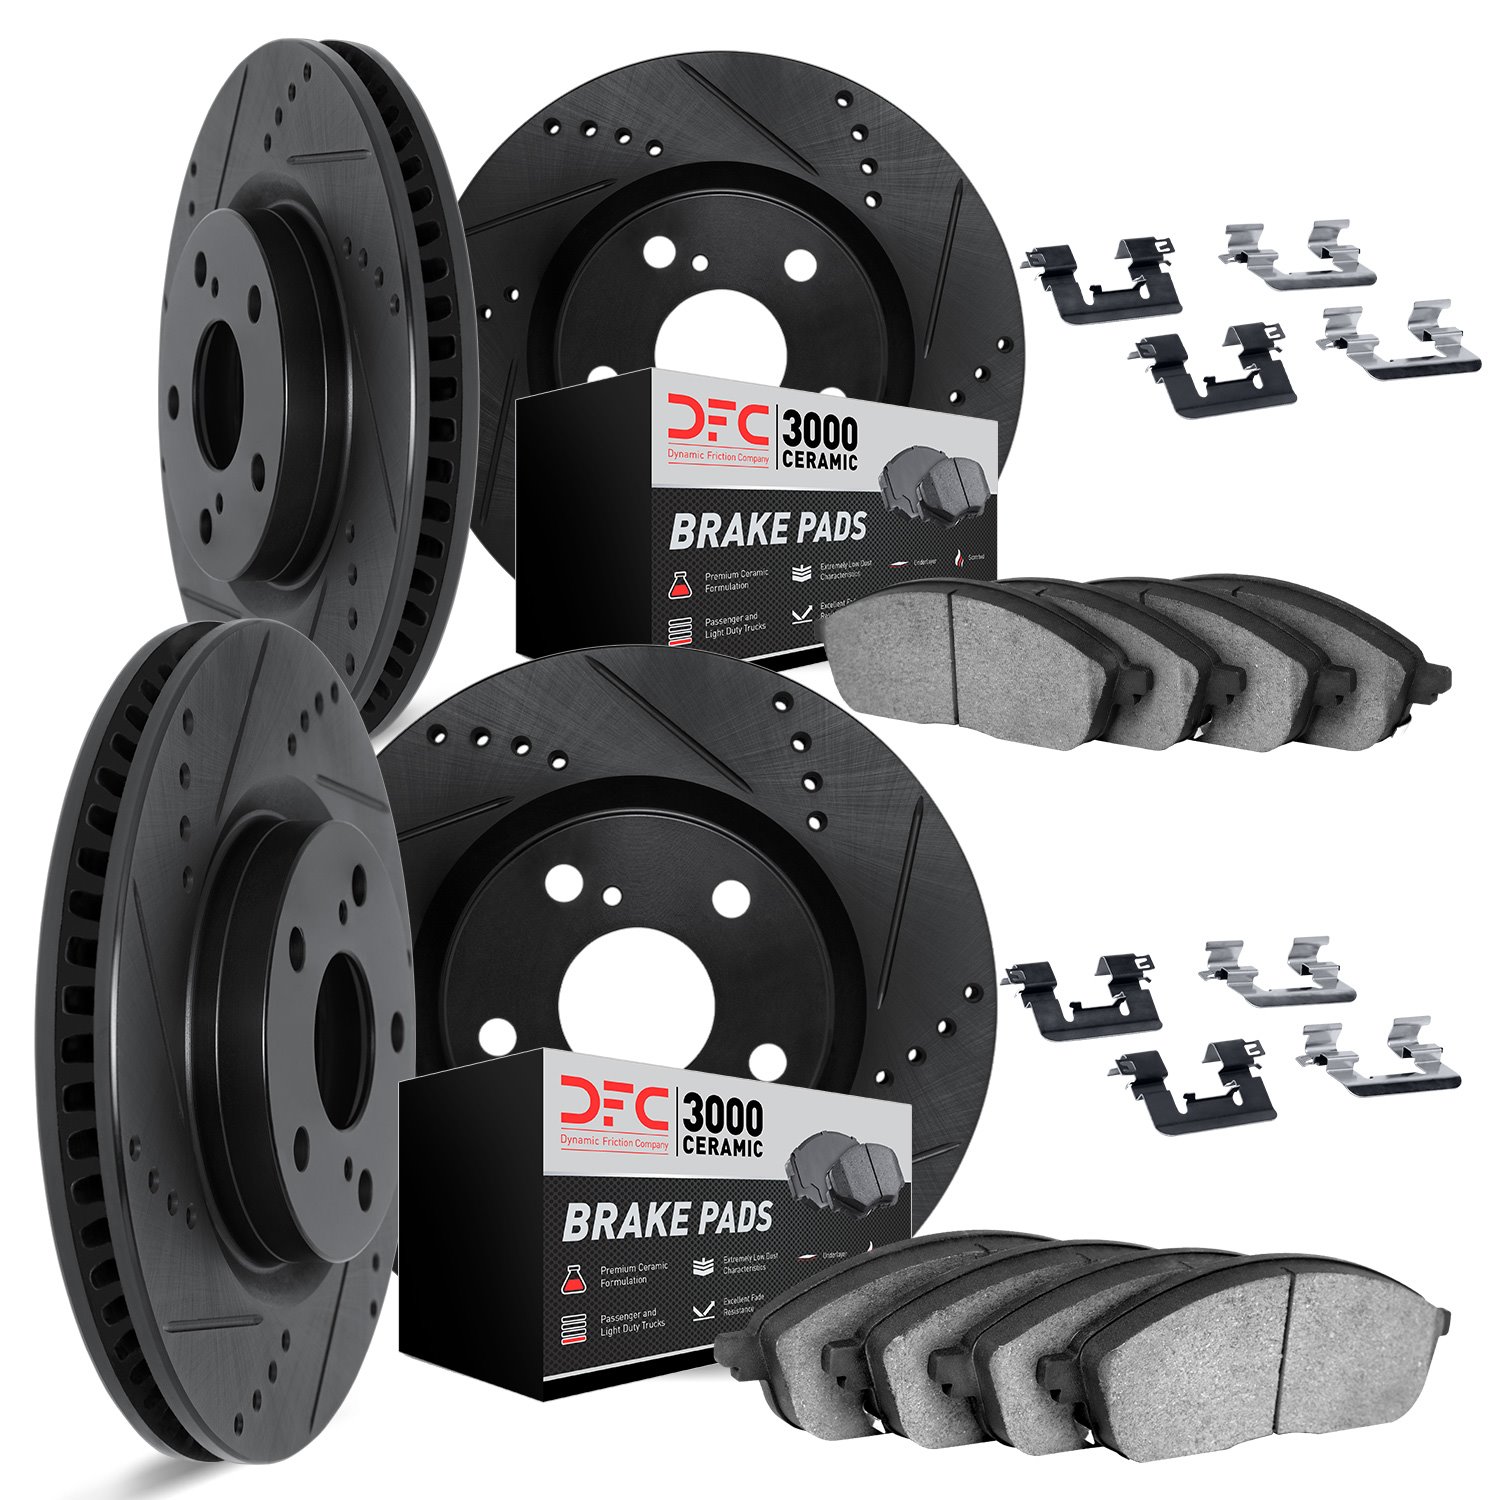 8314-75012 Drilled/Slotted Brake Rotors with 3000-Series Ceramic Brake Pads Kit & Hardware [Black], 2014-2015 Lexus/Toyota/Scion